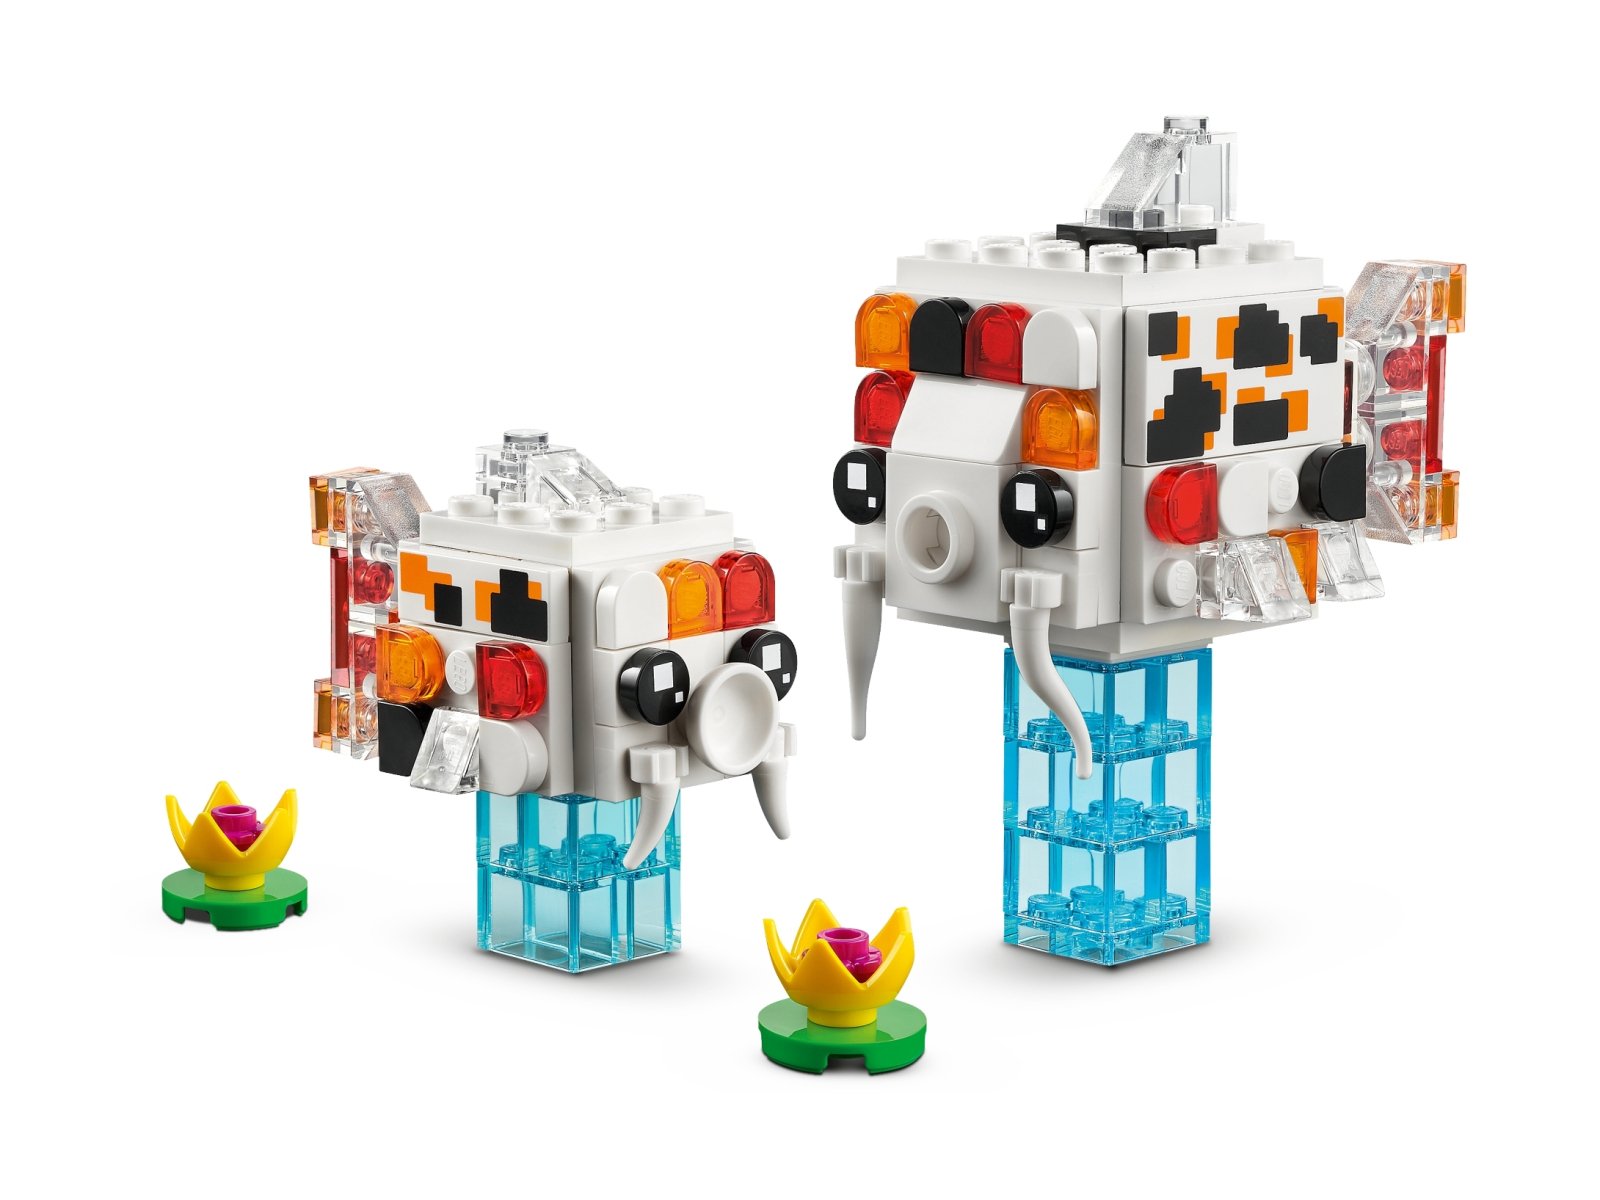 LEGO BrickHeadz 40545 Karp koi